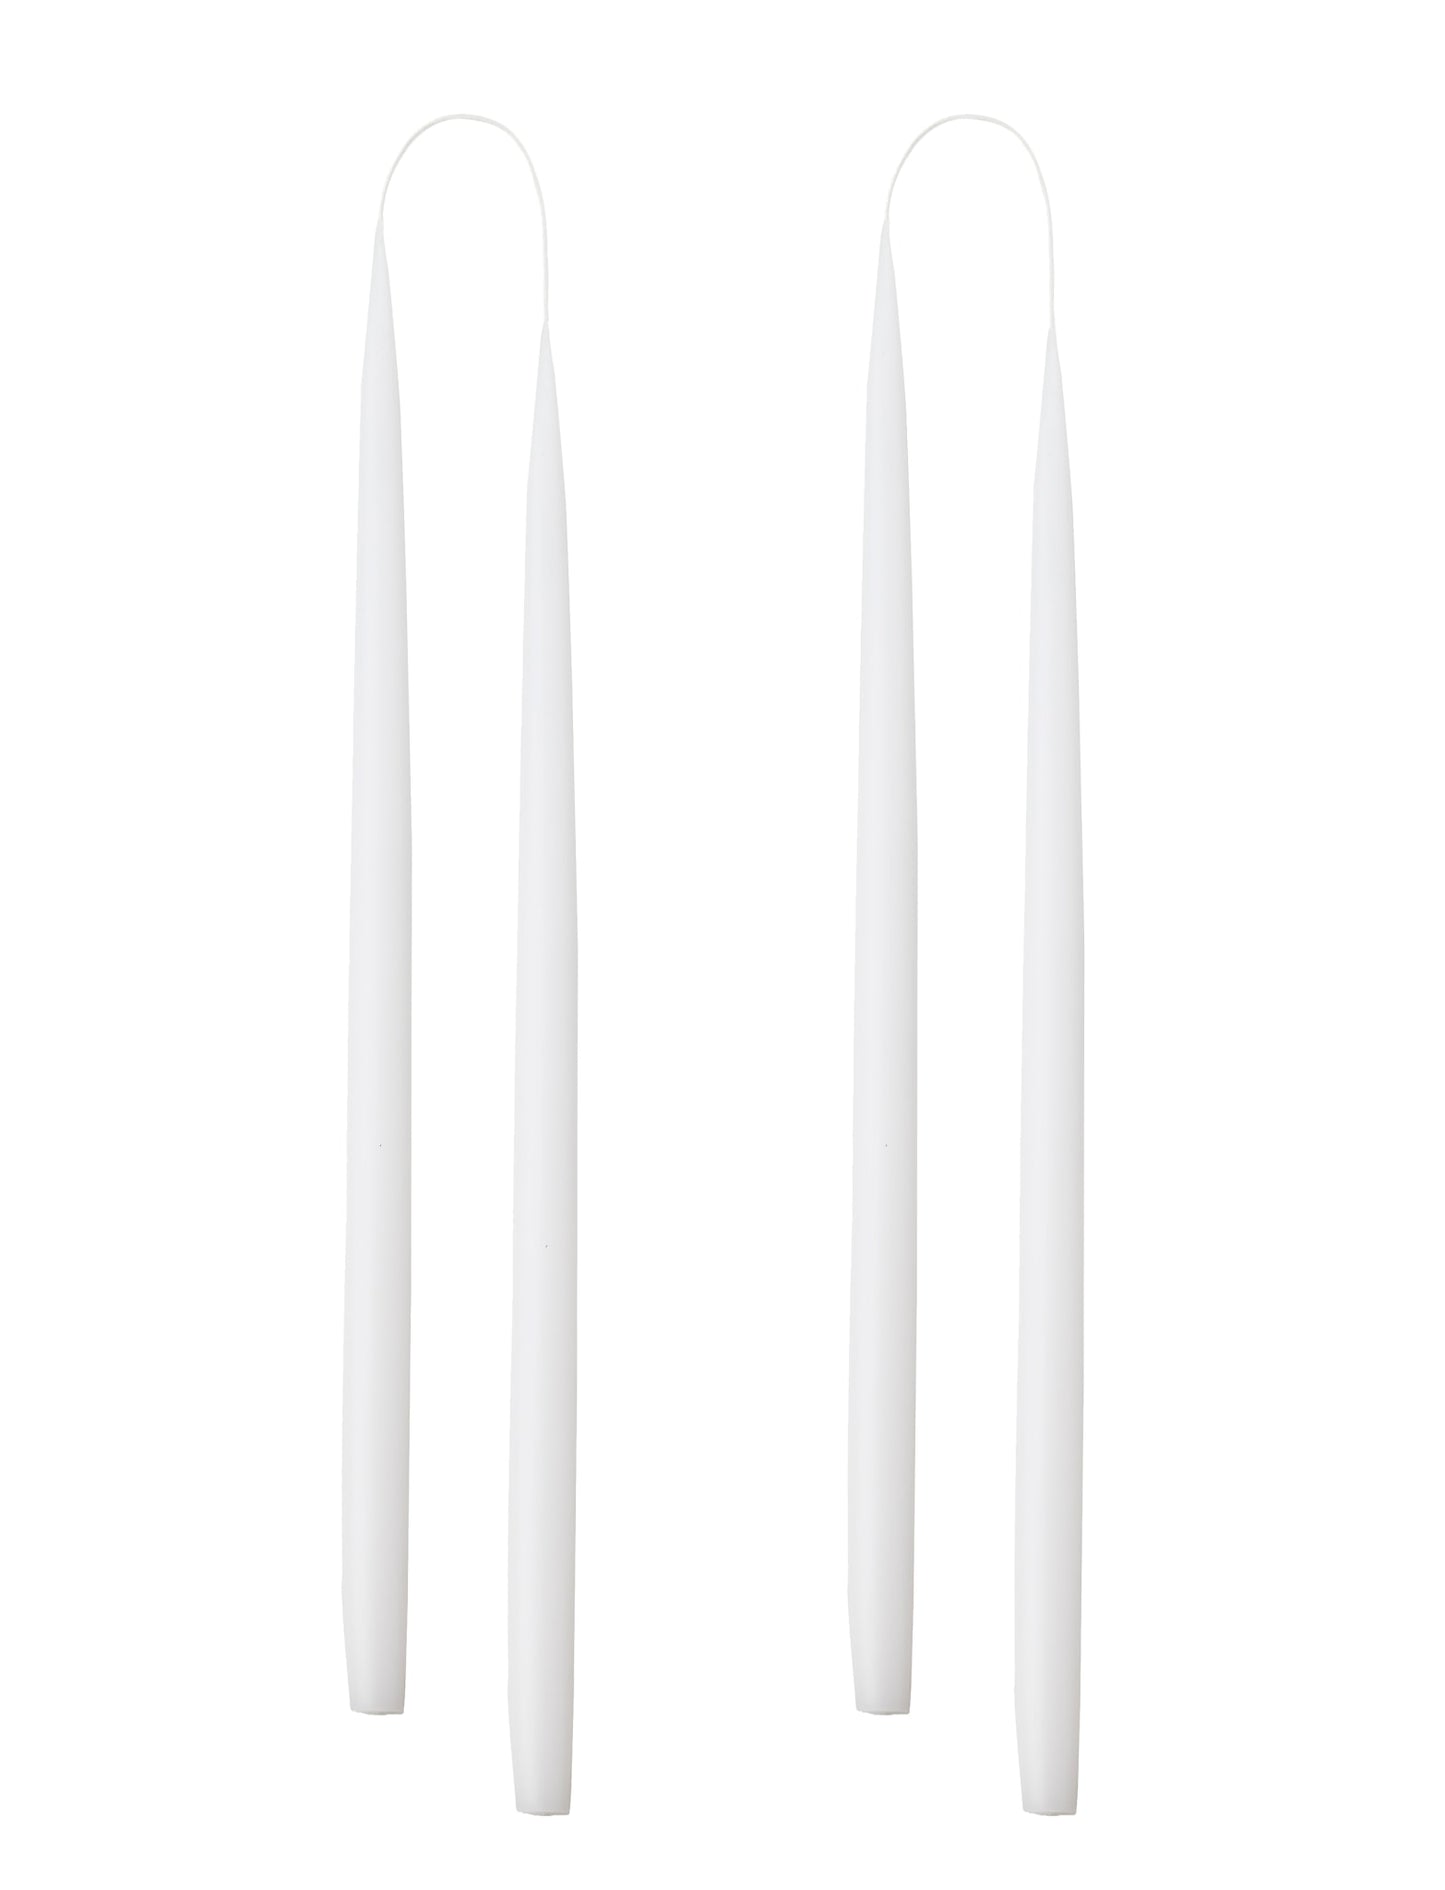 Von Hand getauchte, gefärbte Kerze, im 4er-Pack – 2,2 cm x 45 cm – Weiß #01